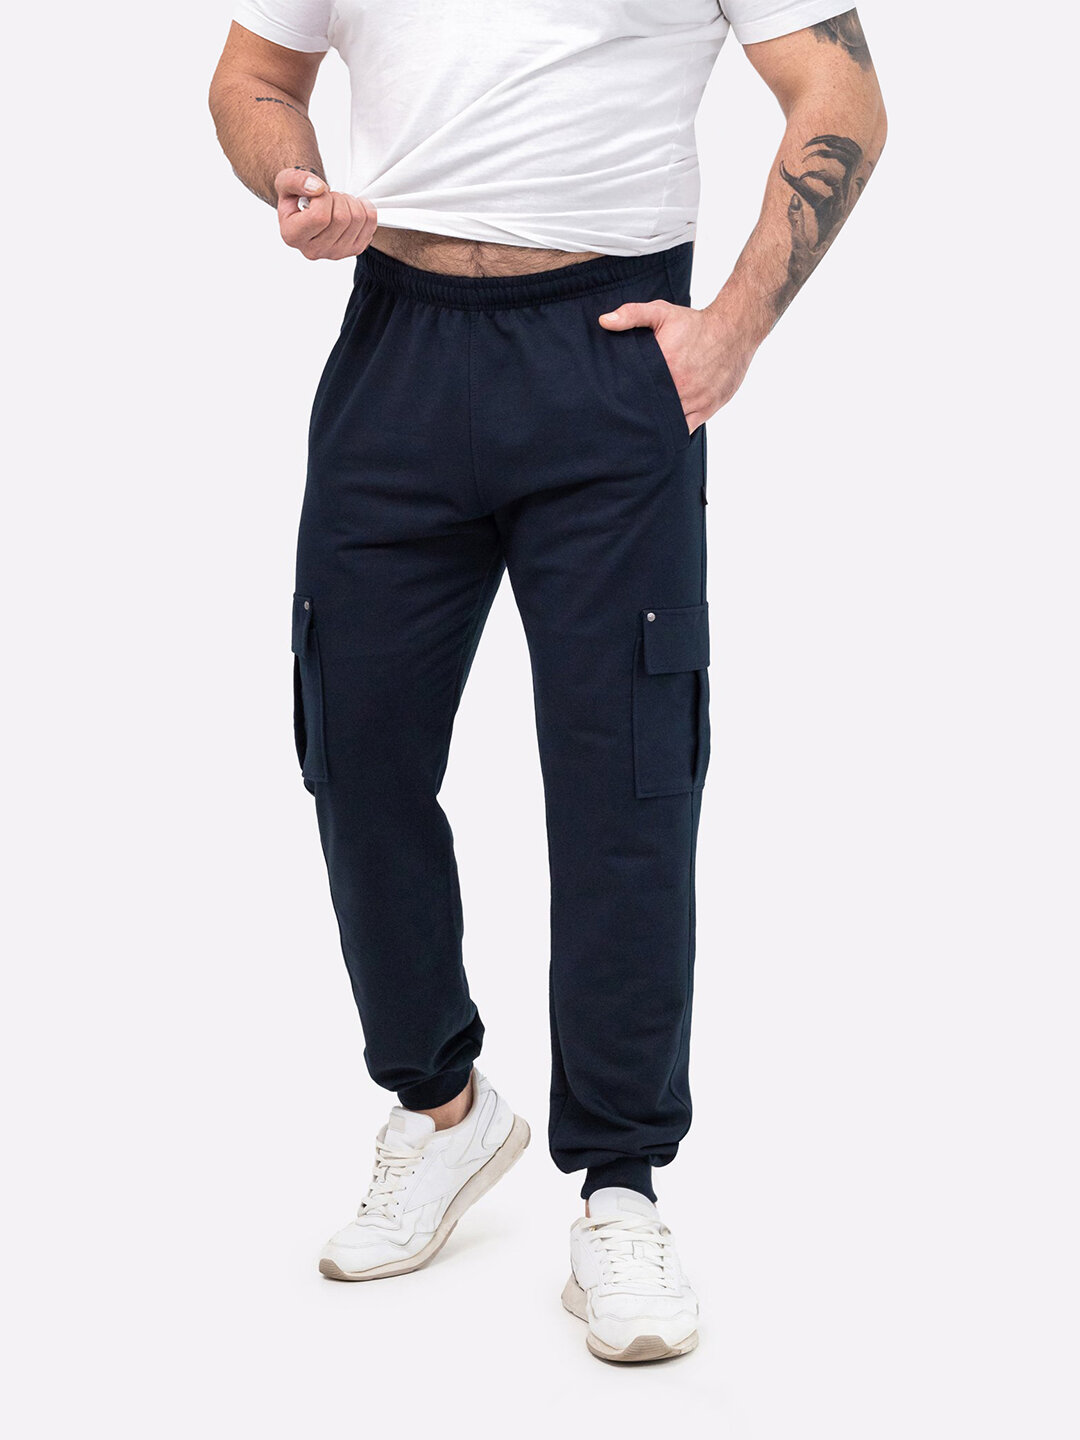 Спортивные штаны мужские джоггеры демисезонные для мужчин HappyFox, HF9122